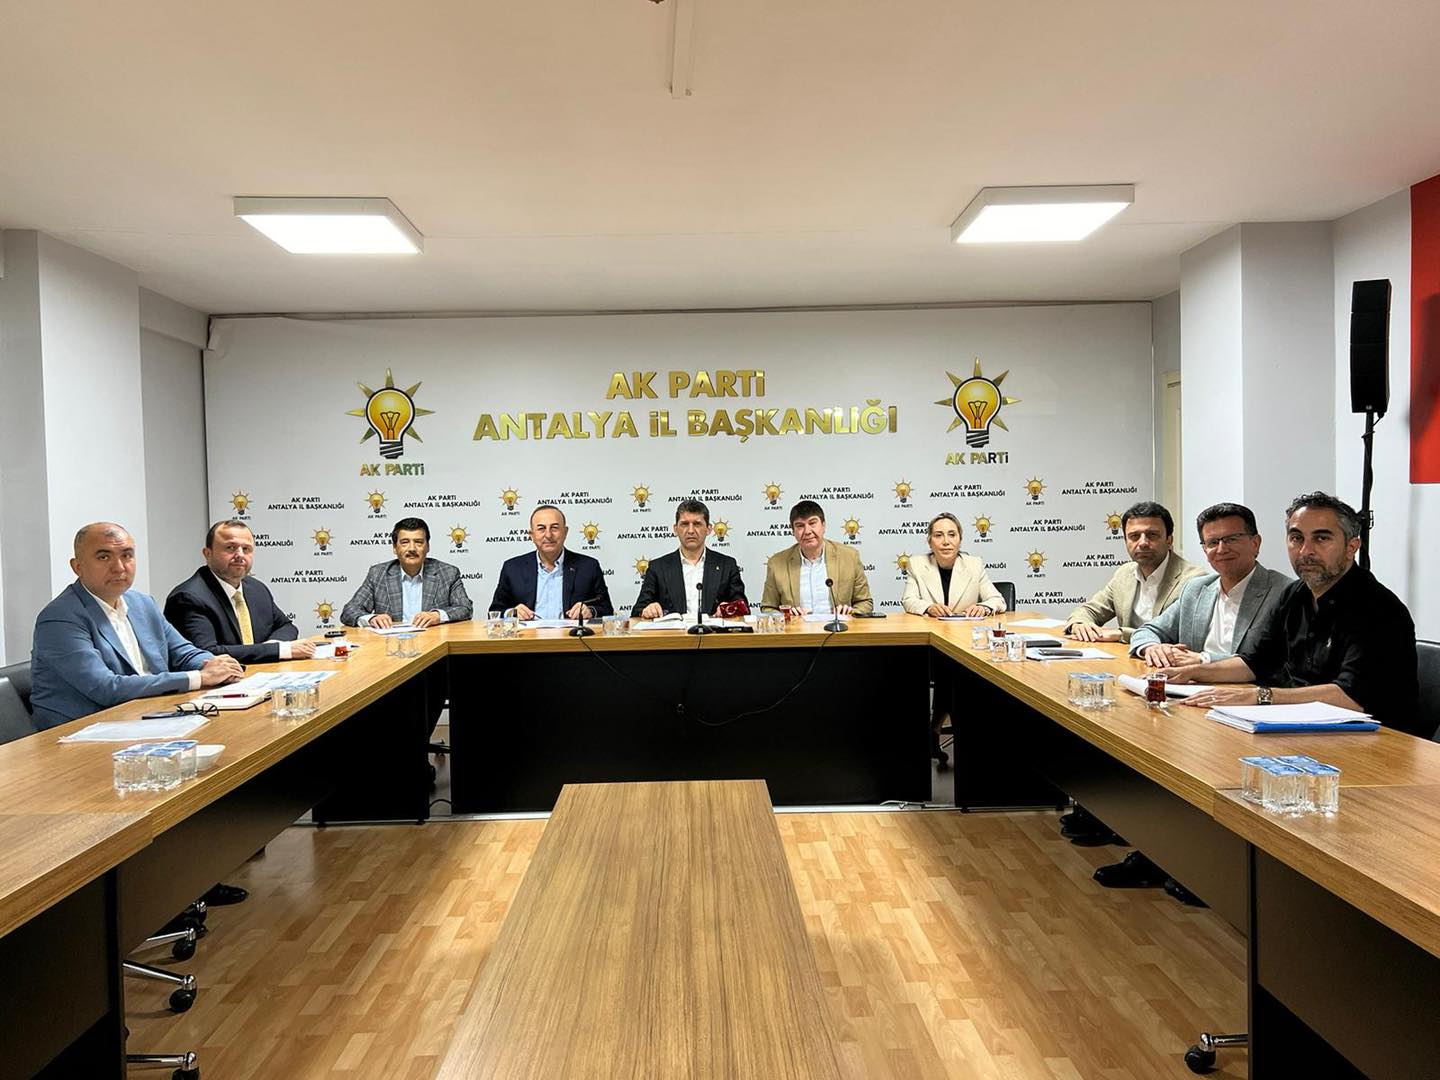 AK Parti MKYK Üyeleri Antalya'da Bir Aylık Toplantı Gerçekleştirdi